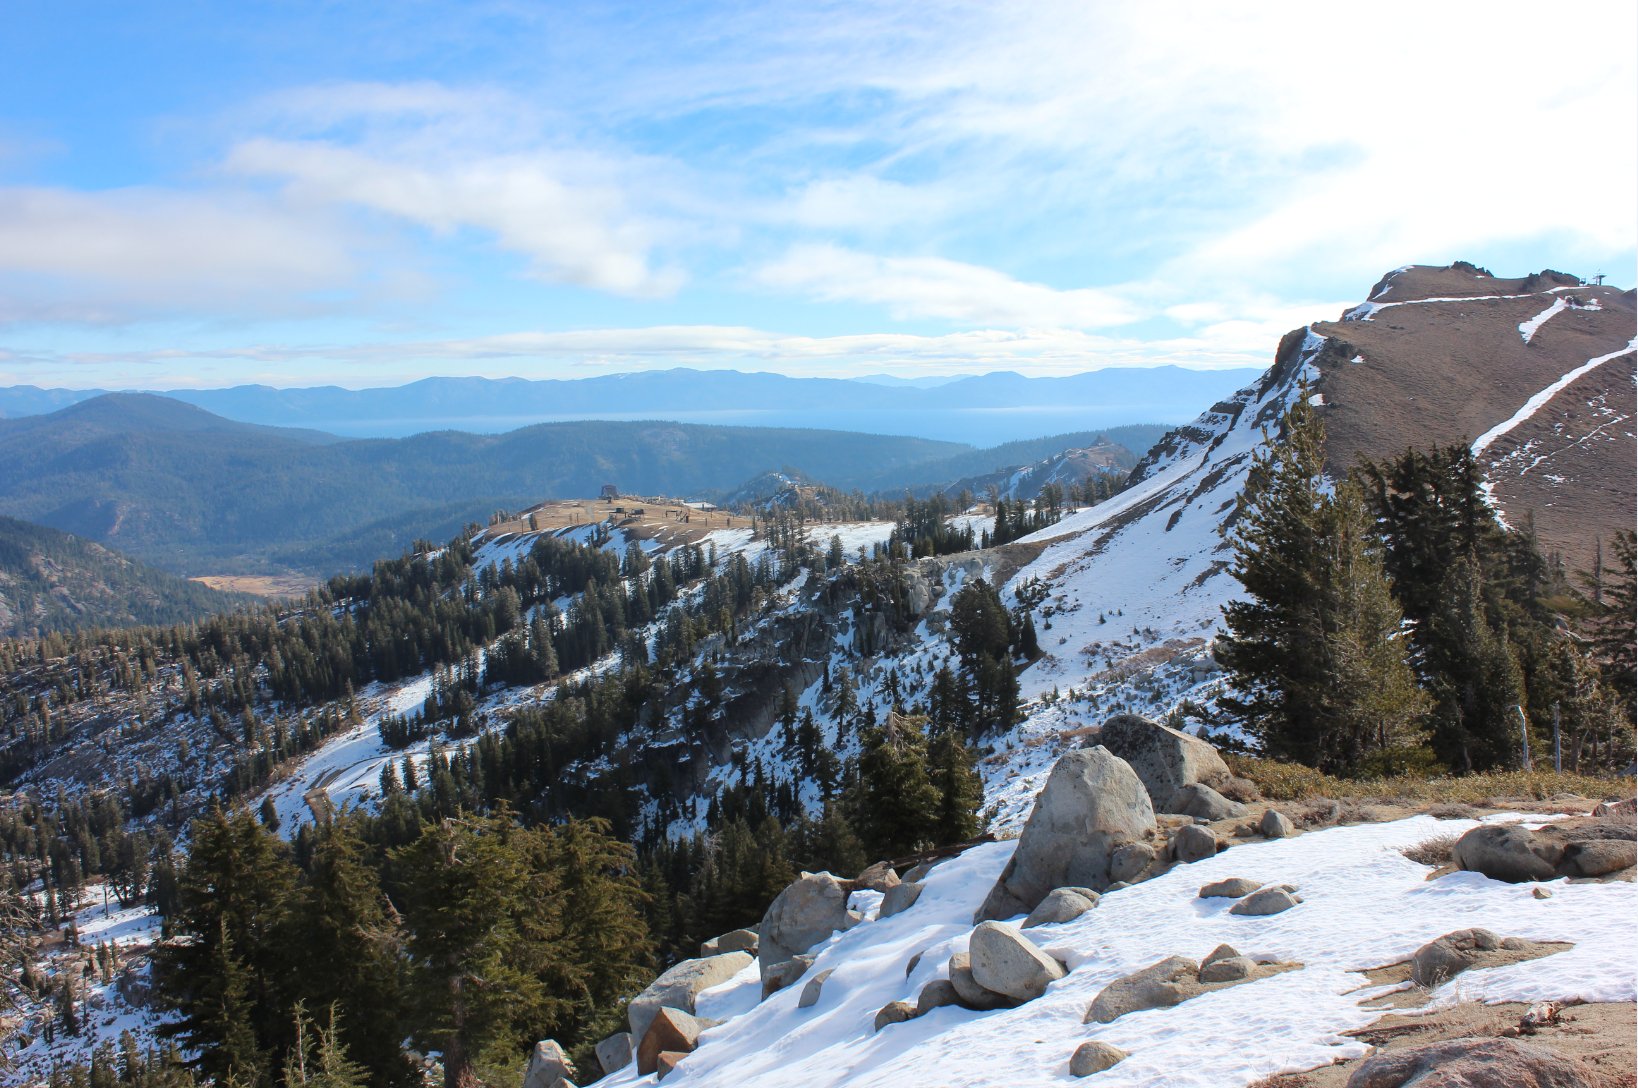 View toward Tahoe from Peak